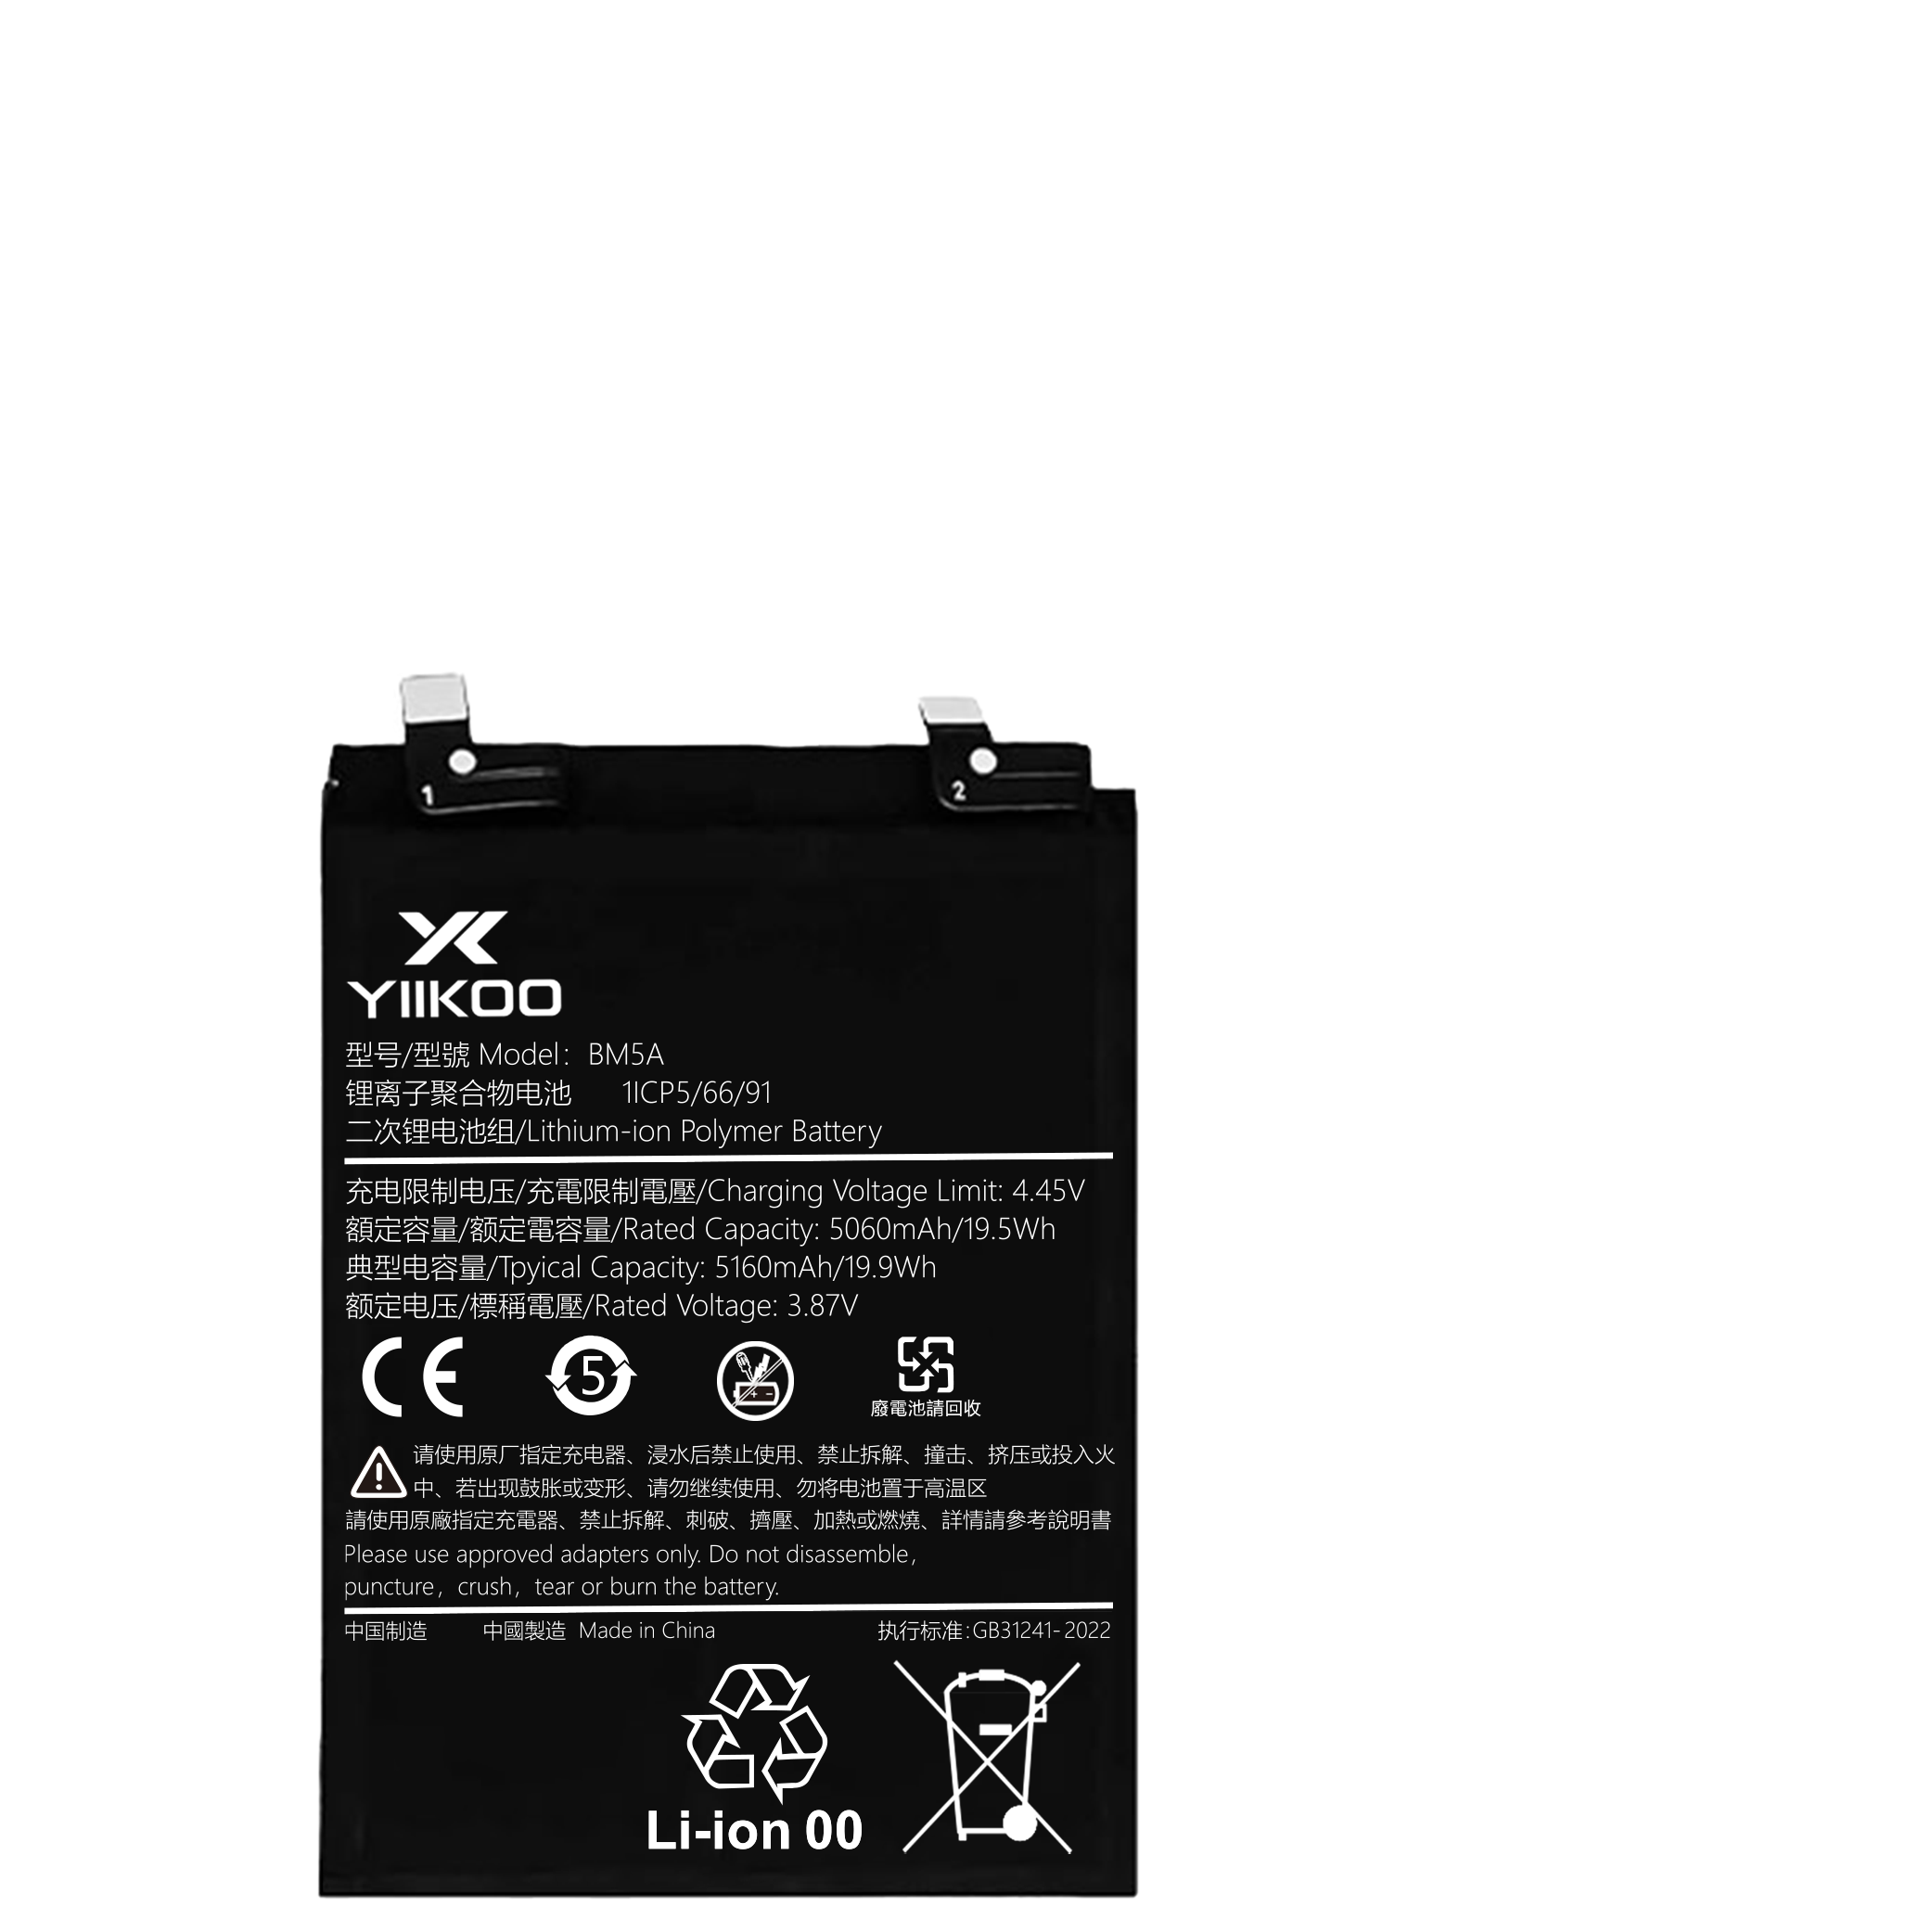 Hongmi Note11pro Battery (5060mAh) BM5A